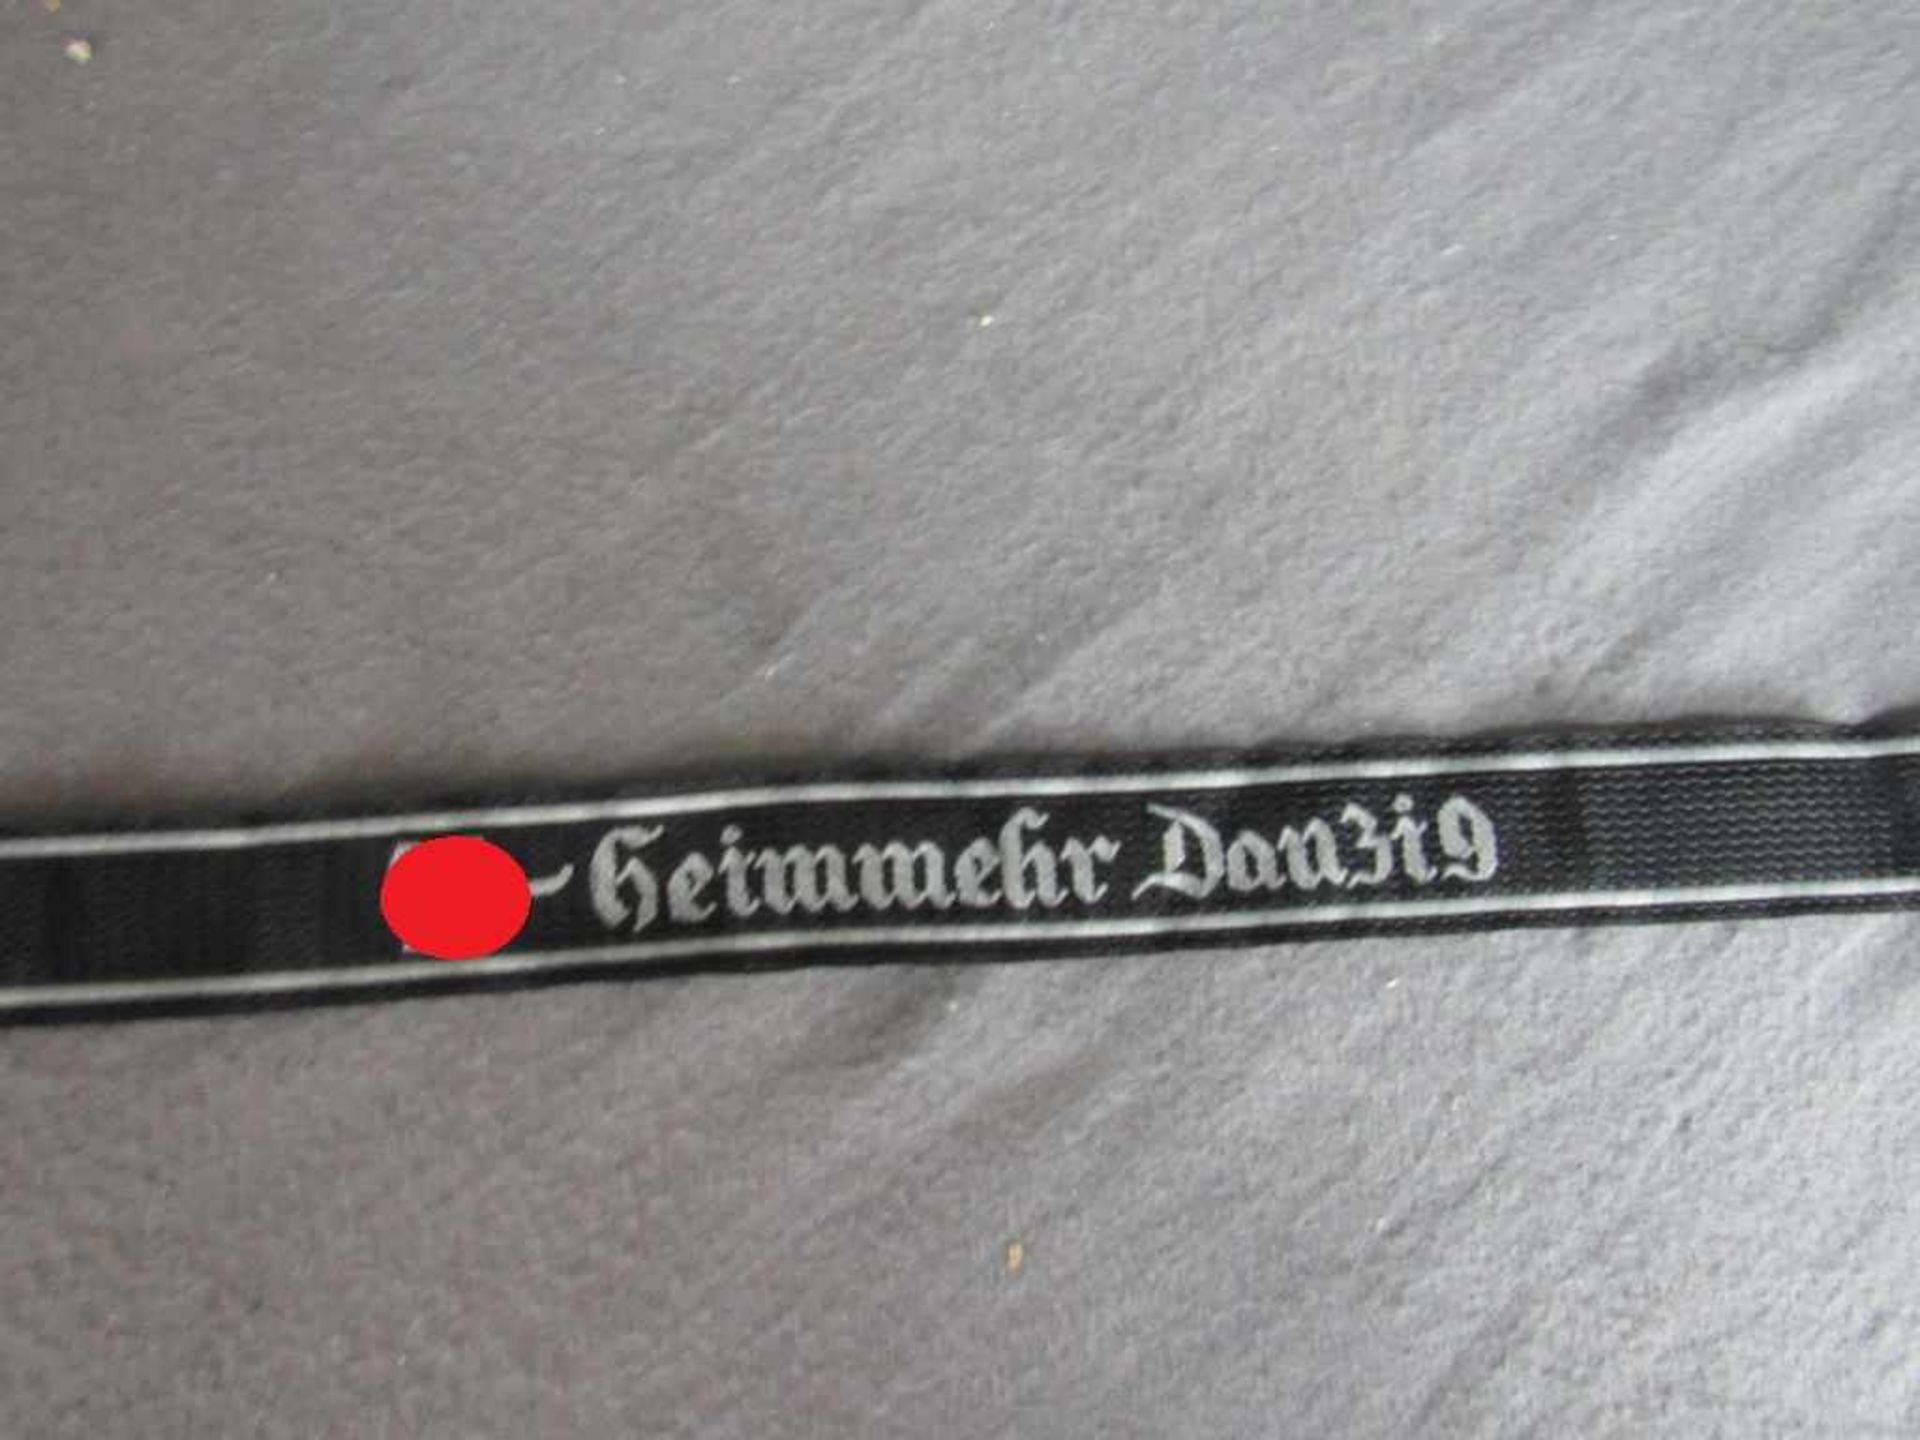 Band SS Heimwehr Danzig ungeprüft- - -20.00 % buyer's premium on the hammer price19.00 % VAT on